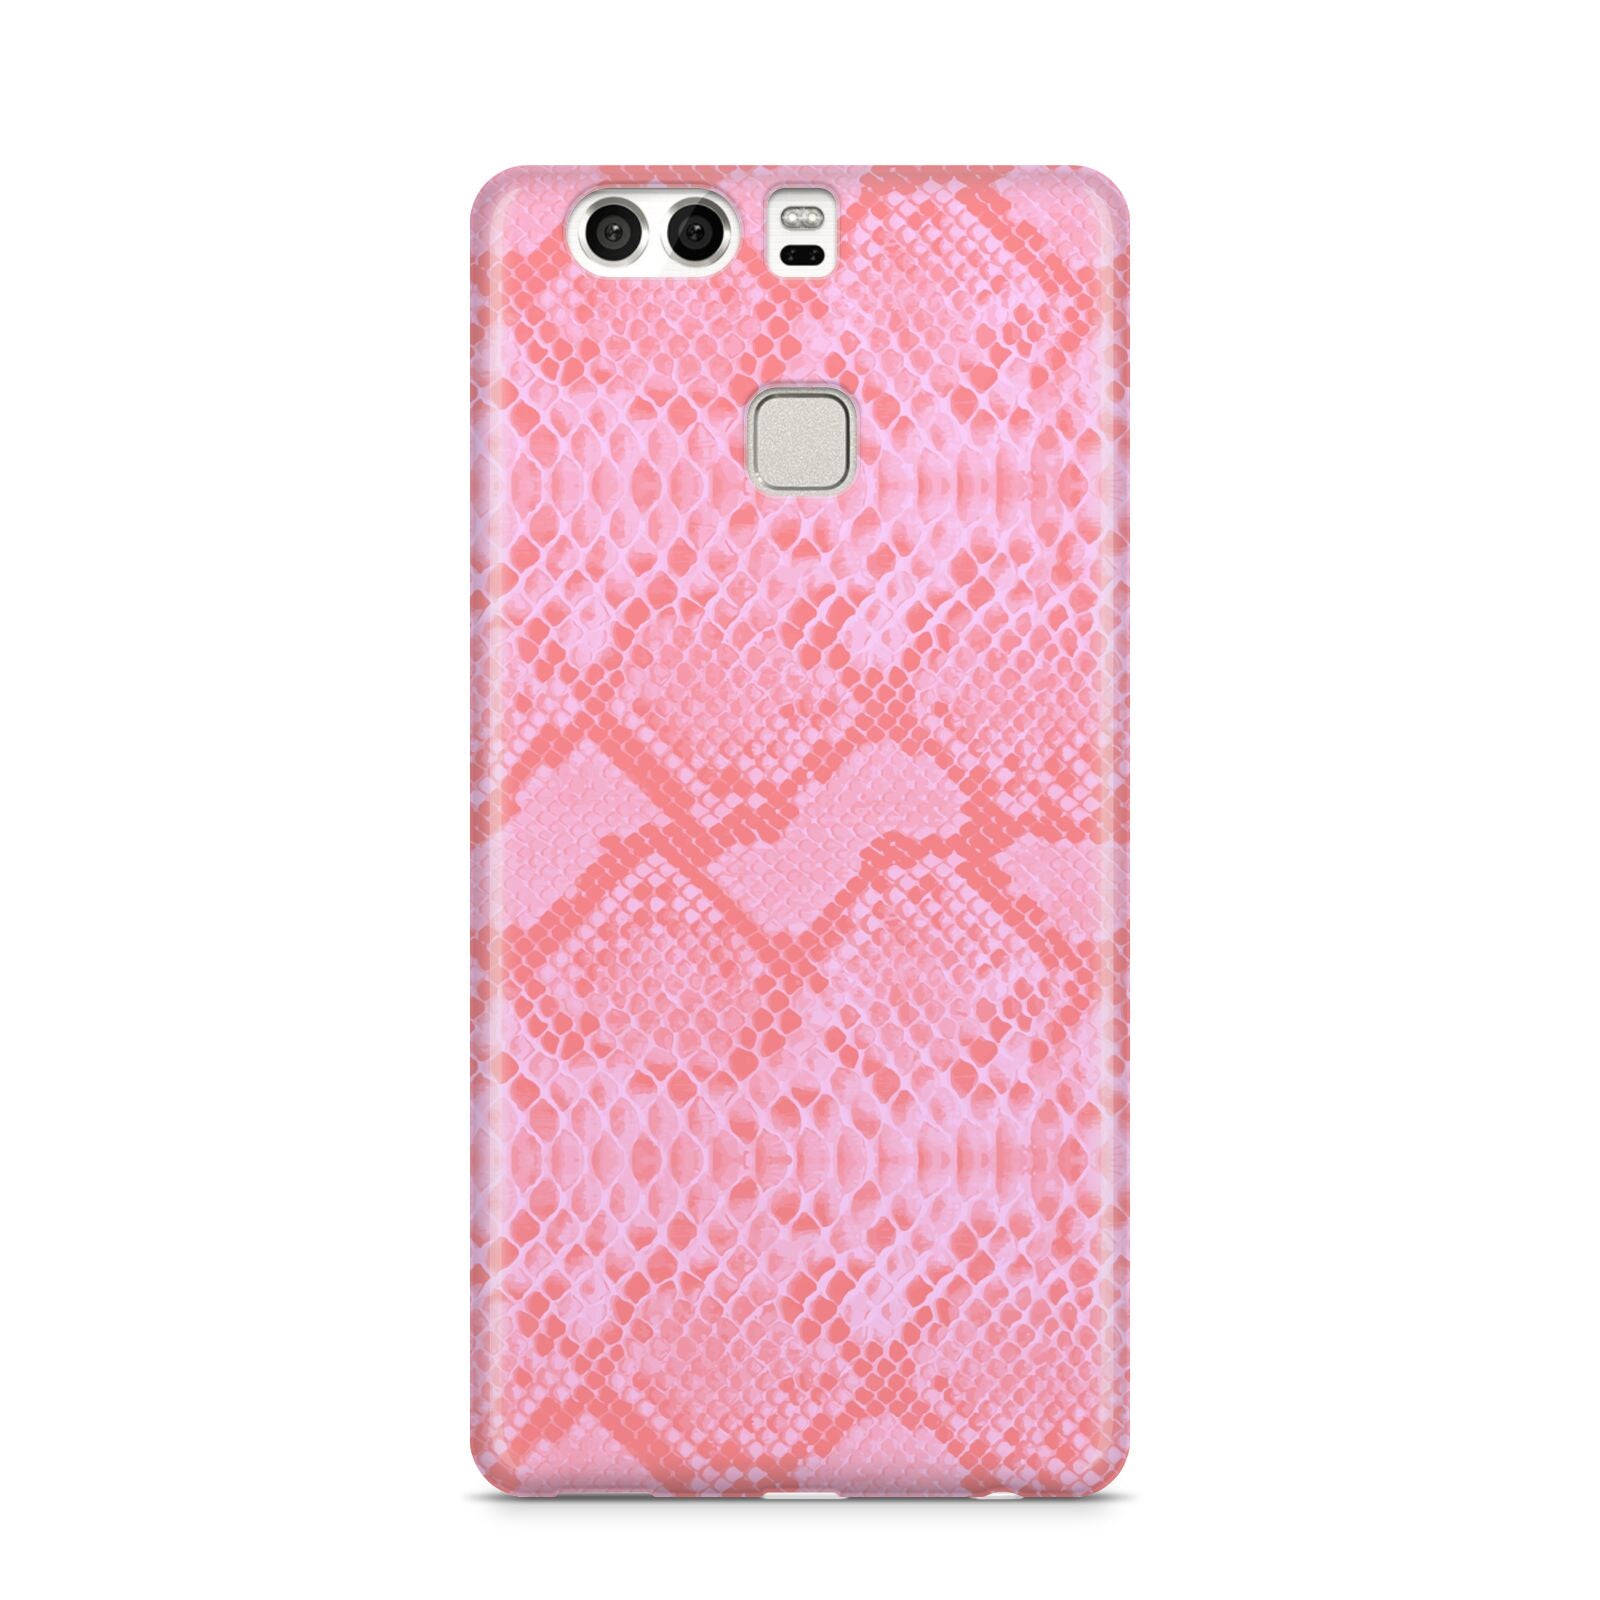 Pink Snakeskin Huawei P9 Case